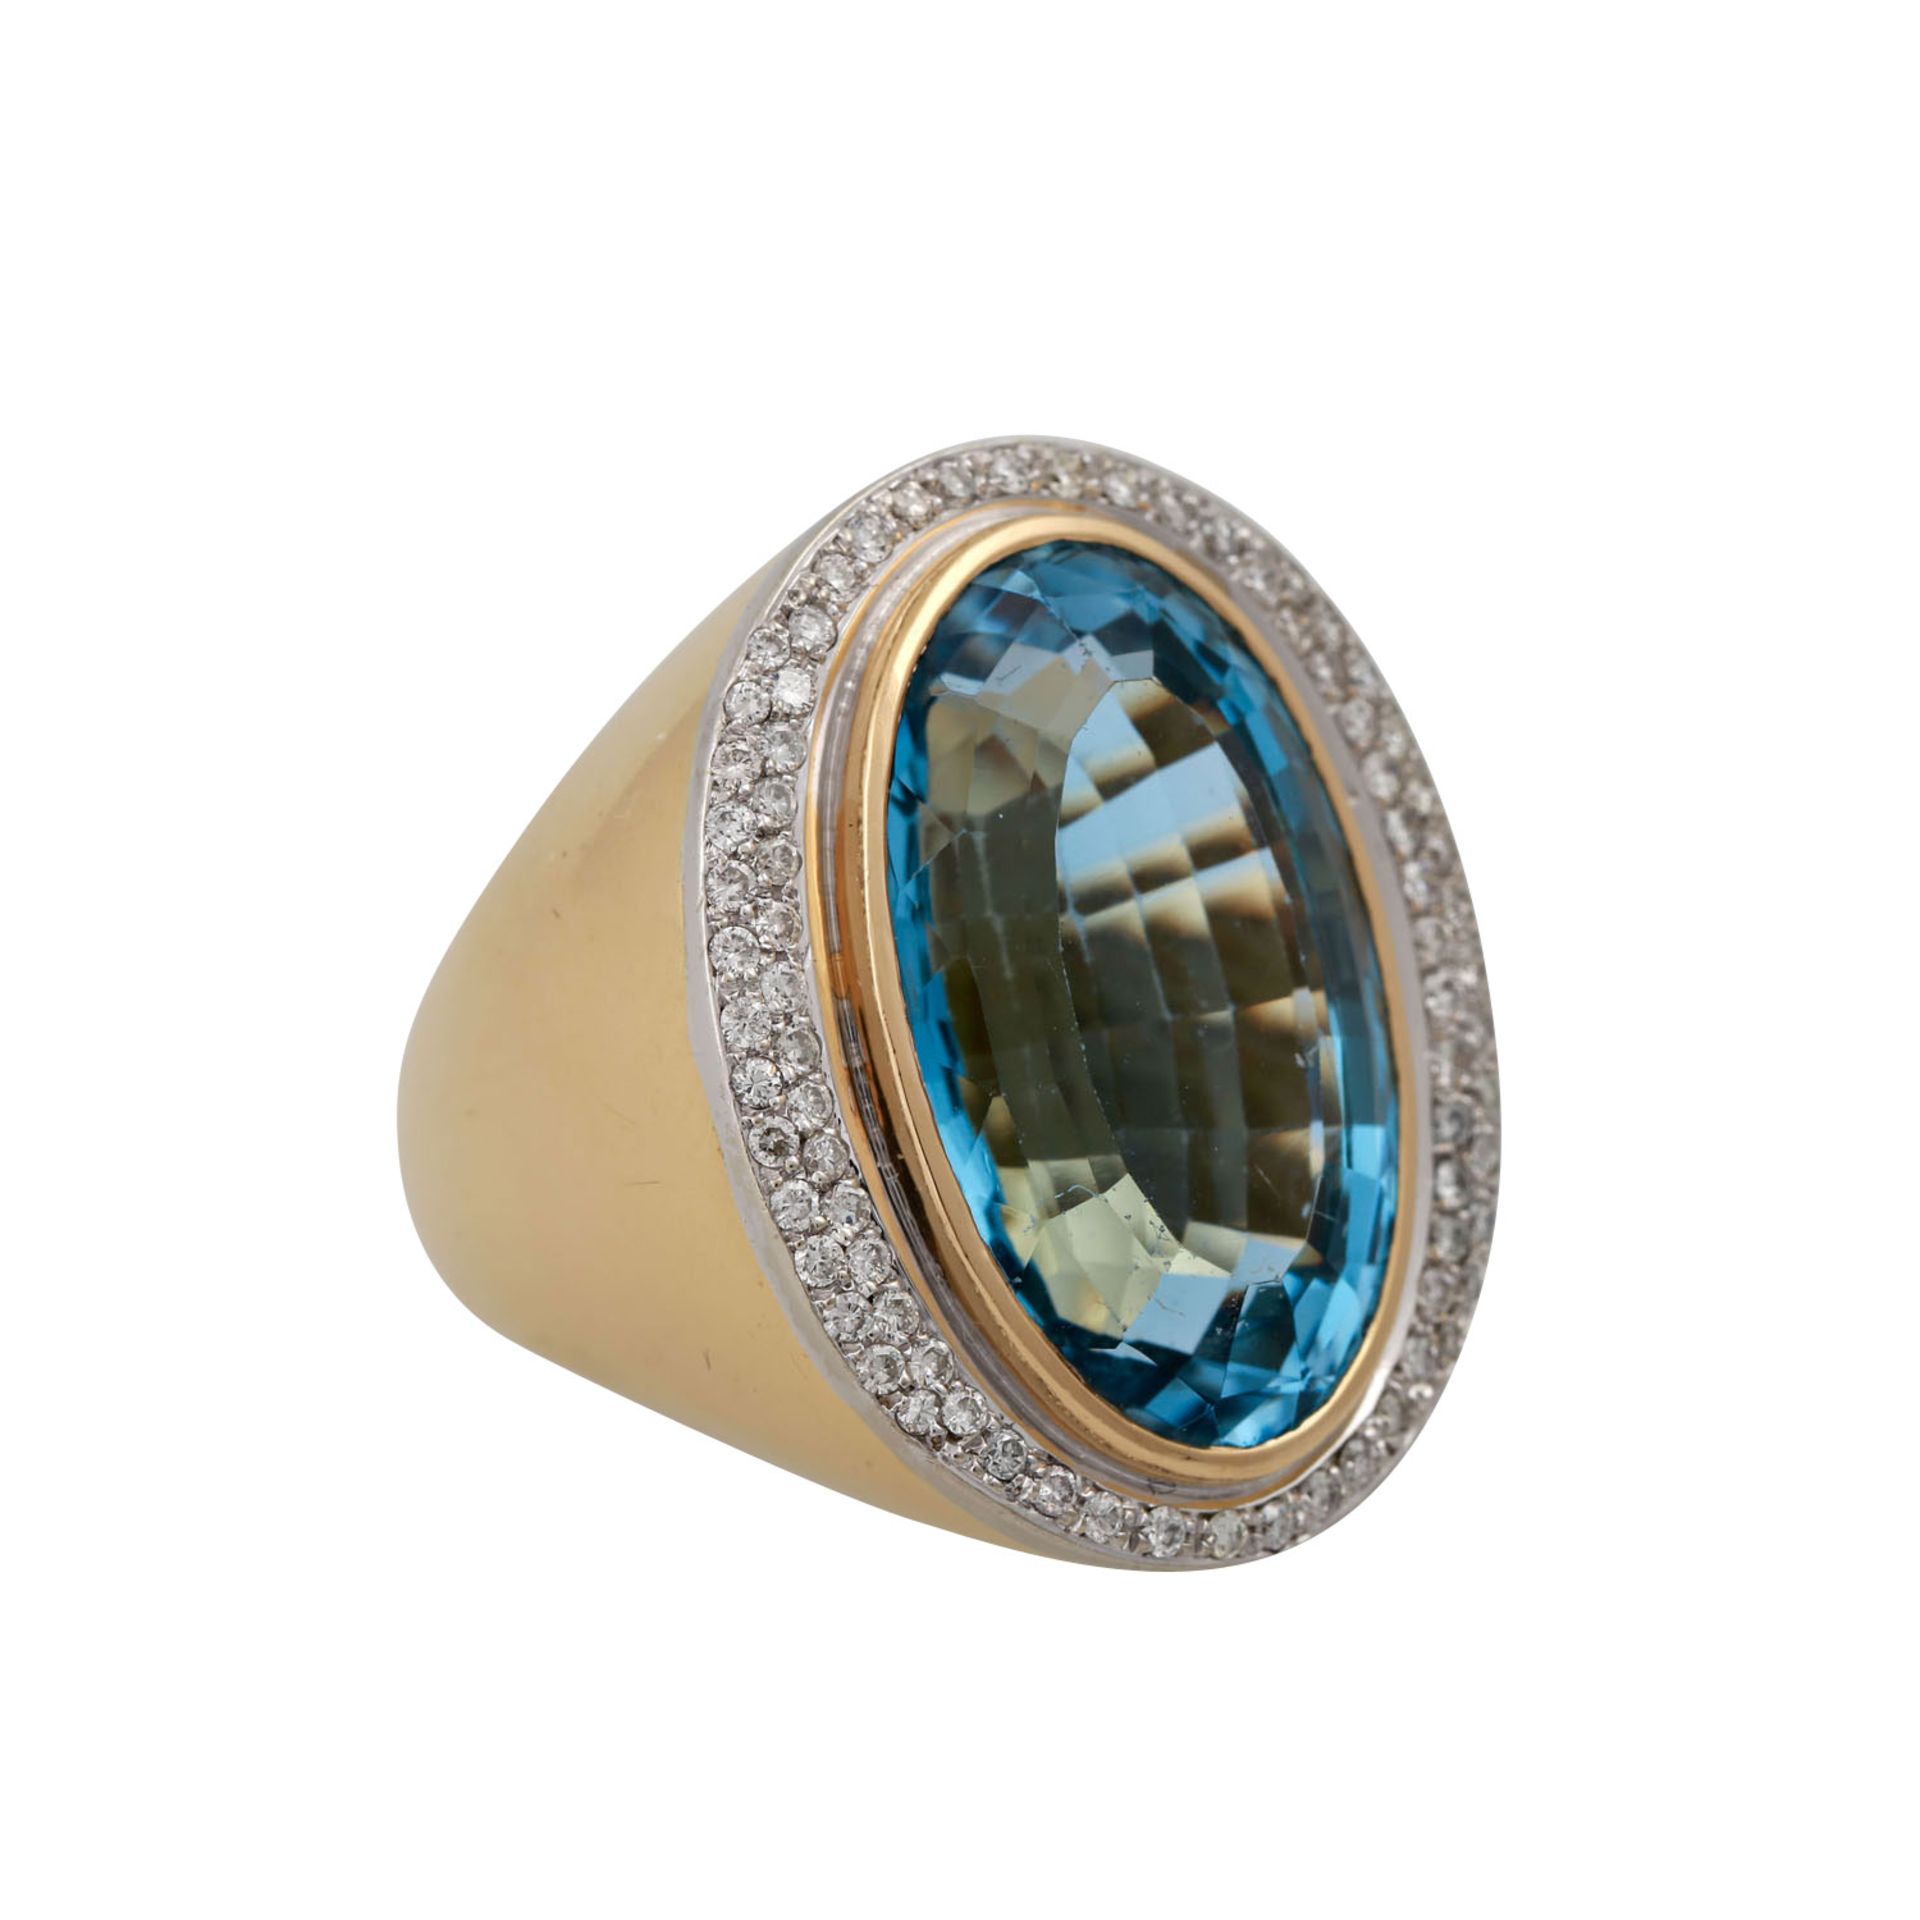 Massiver Ring mit Blautopas ca. 30 ct und Brillanten zus. ca. 0,75 ct, mittlere Farbe - Image 2 of 5